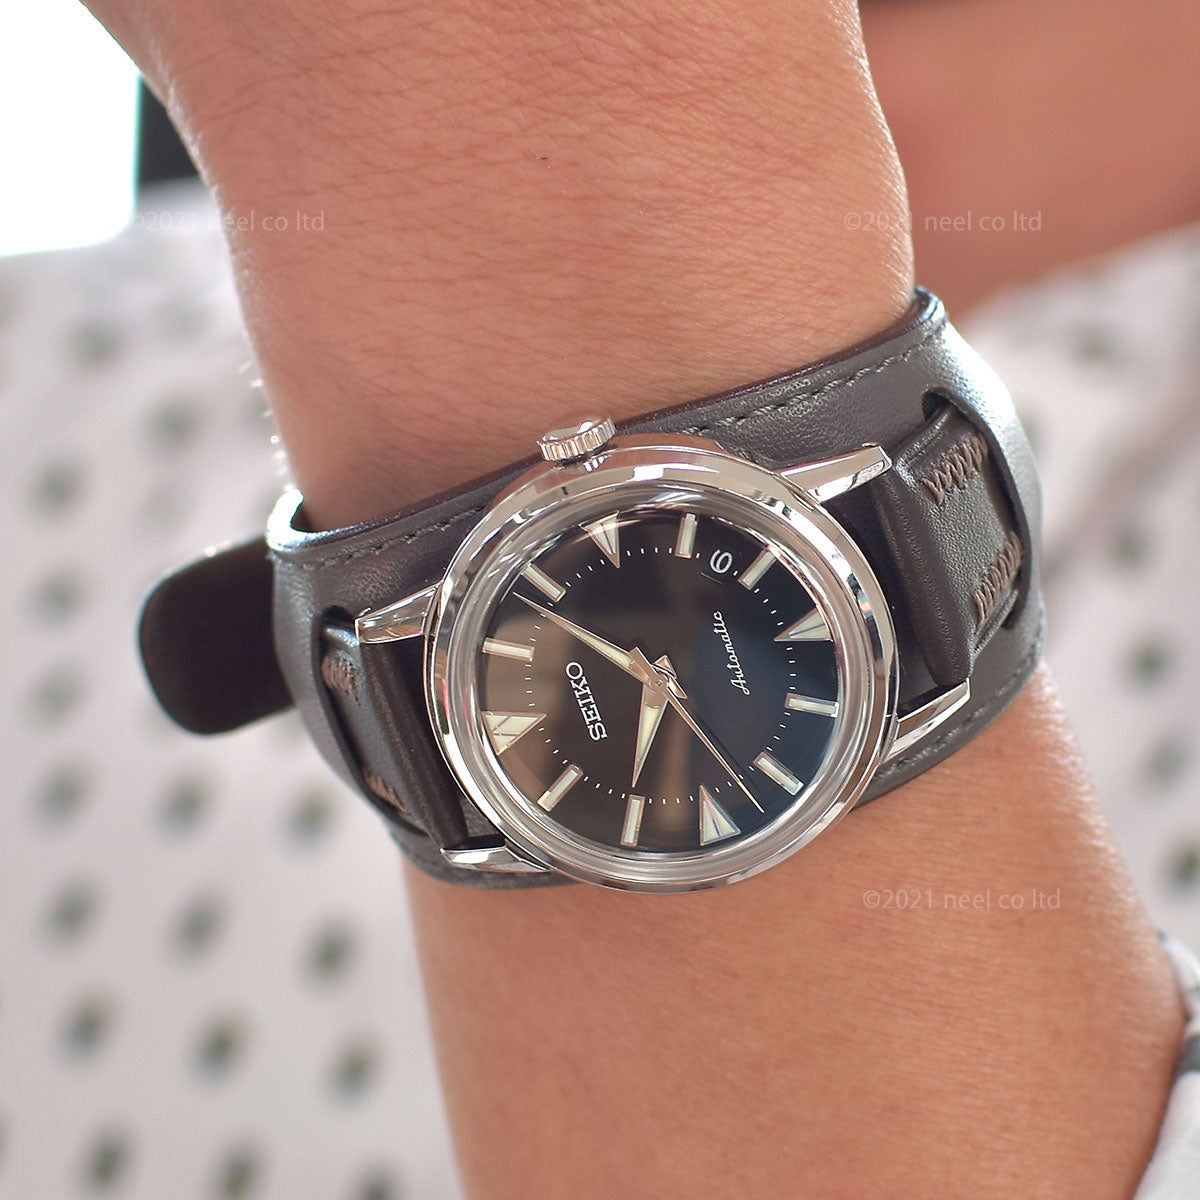 セイコー プロスペックス SEIKO PROSPEX 1959 初代アルピニスト 復刻デザイン コアショップ限定モデル メカニカル 自動巻き 腕時計  メンズ SBEN001